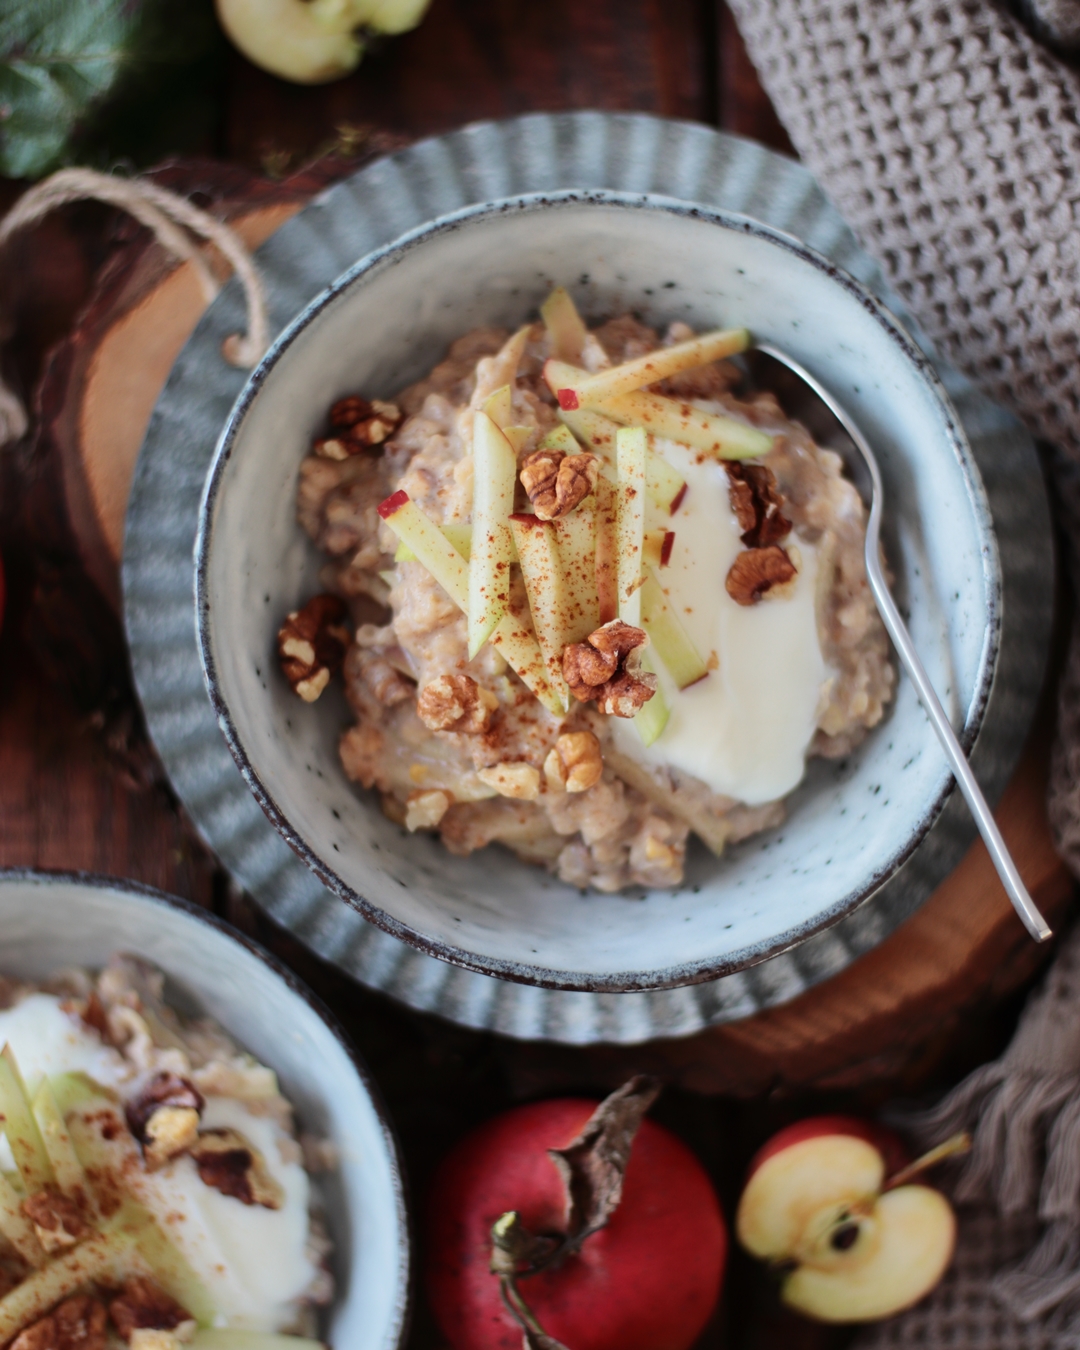 Gesundes Frühstück in nur 10 Minuten: Apfel-Zimt-Porridge mit Walnüssen